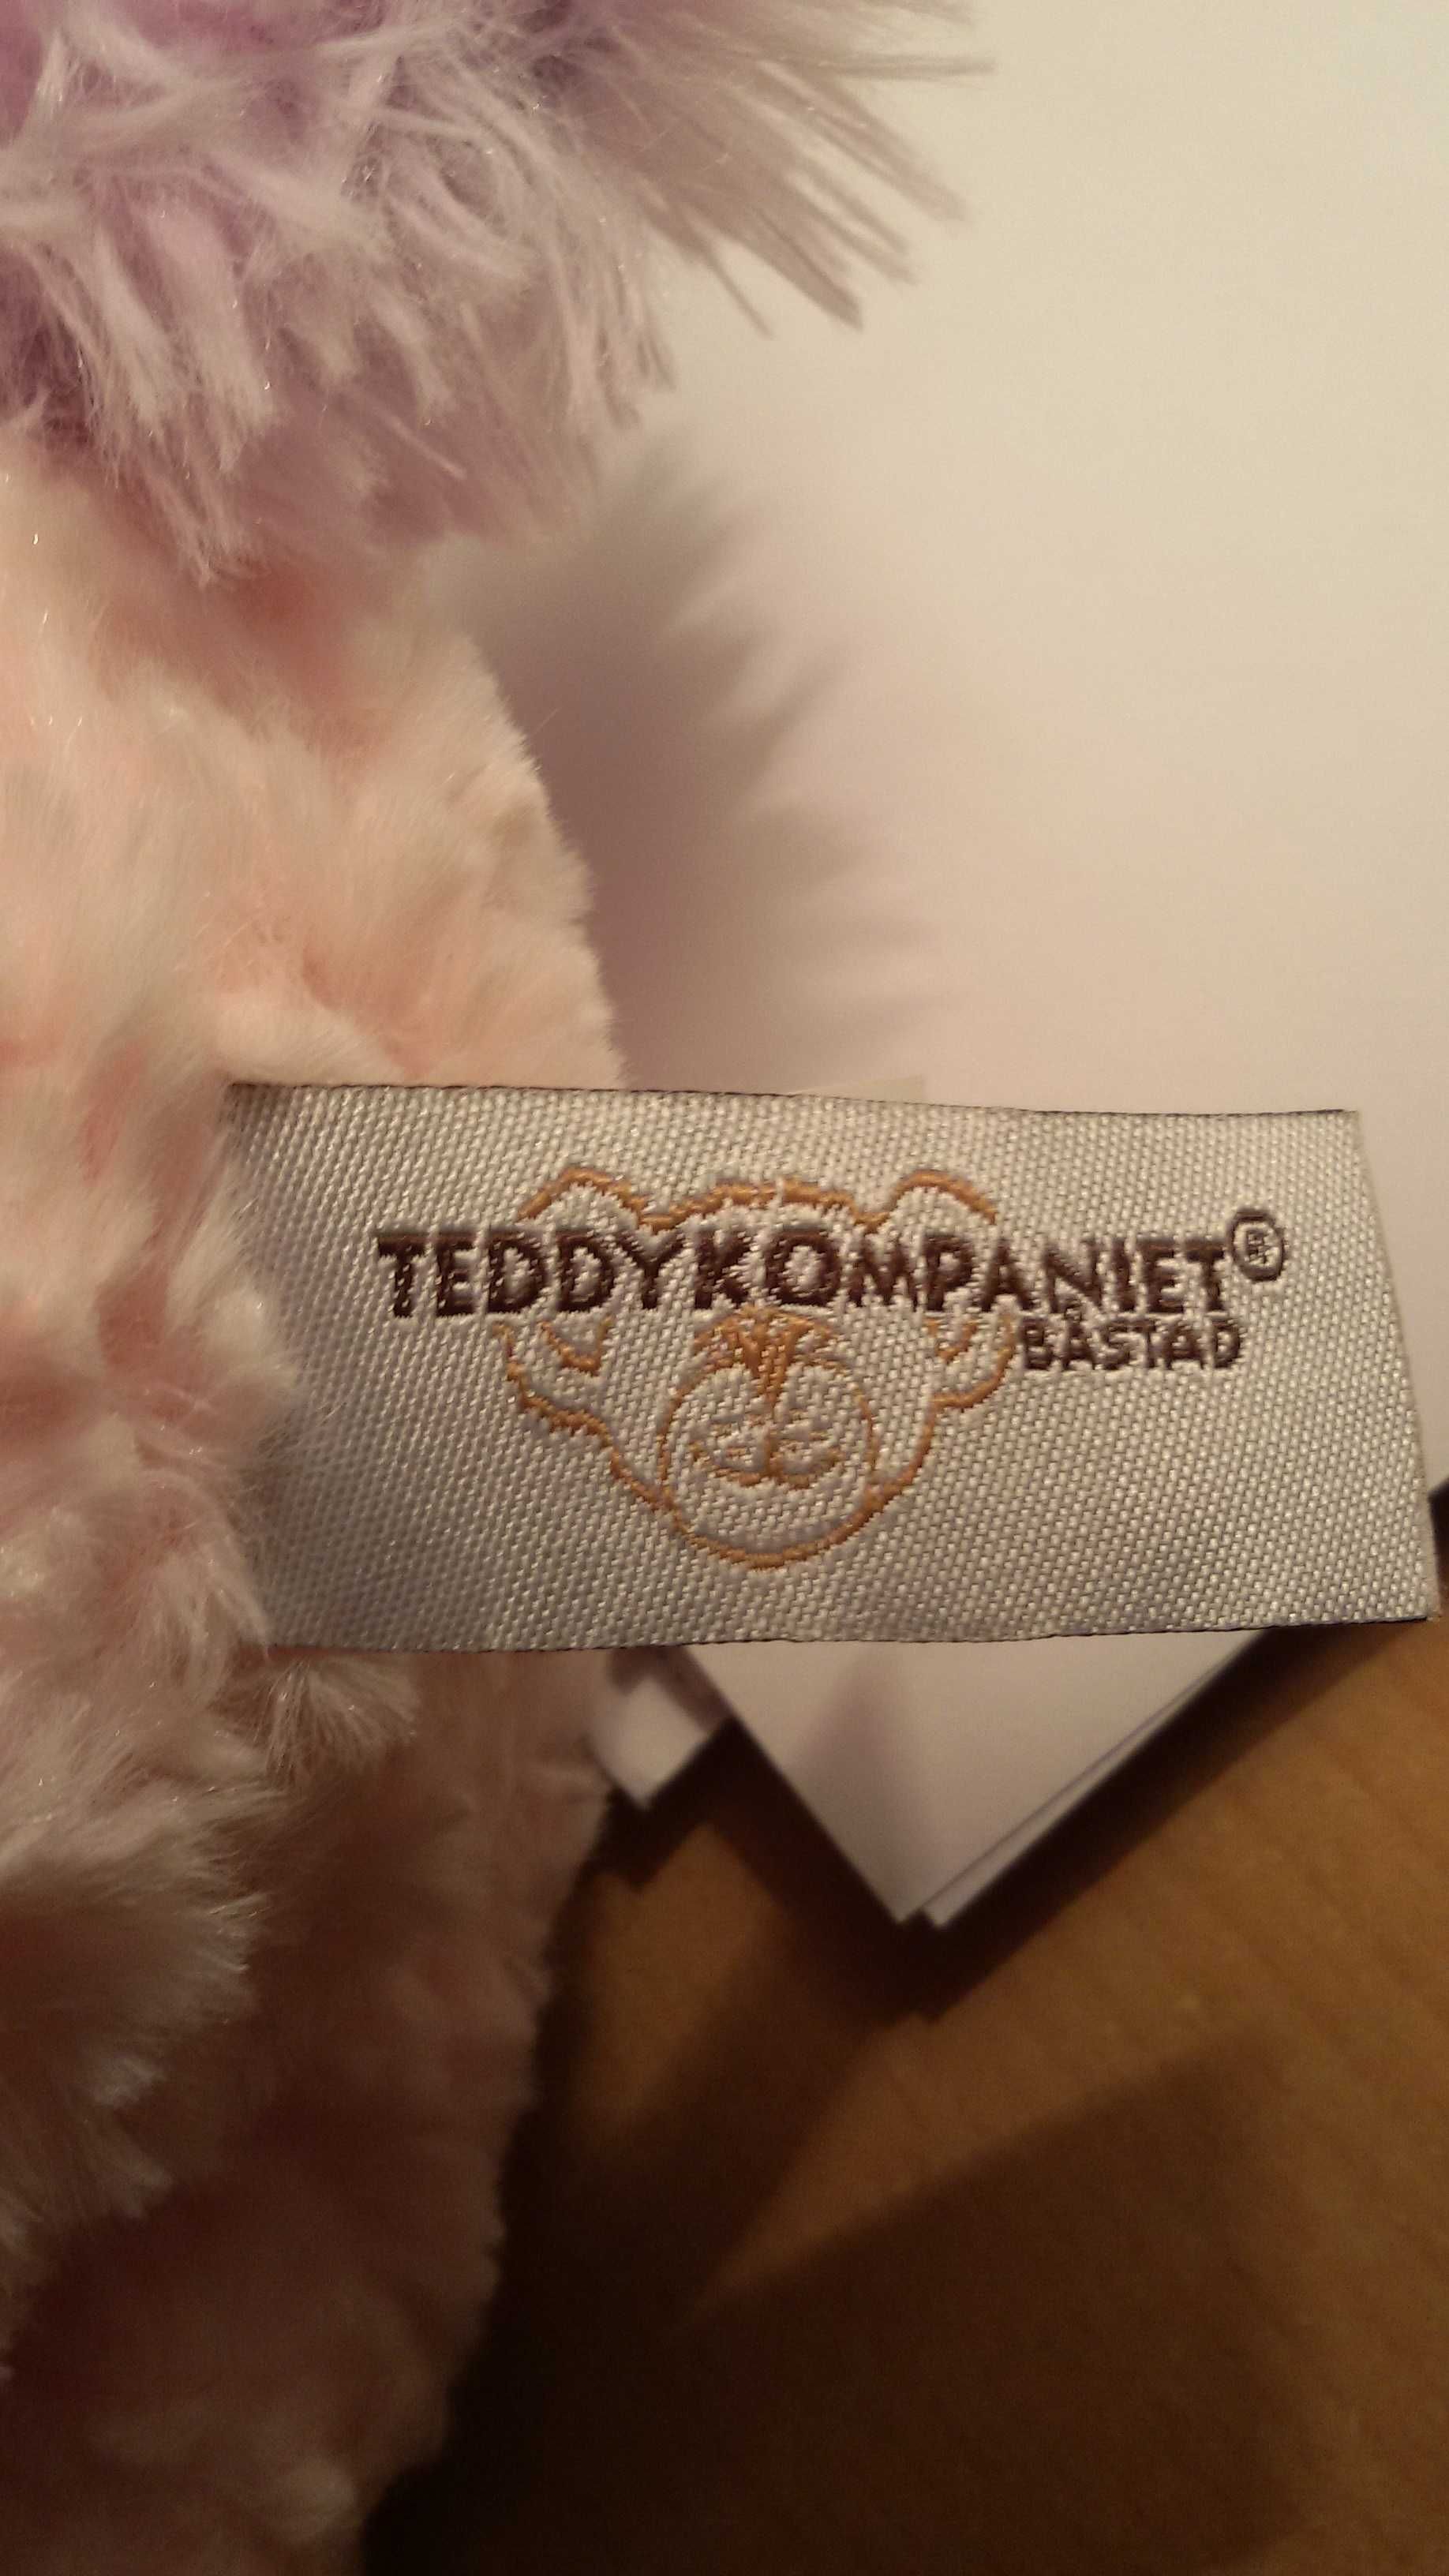 Maskotka Jednorożec Teddy Kompaniet, Przytulanka Jednorożec 30 cm.